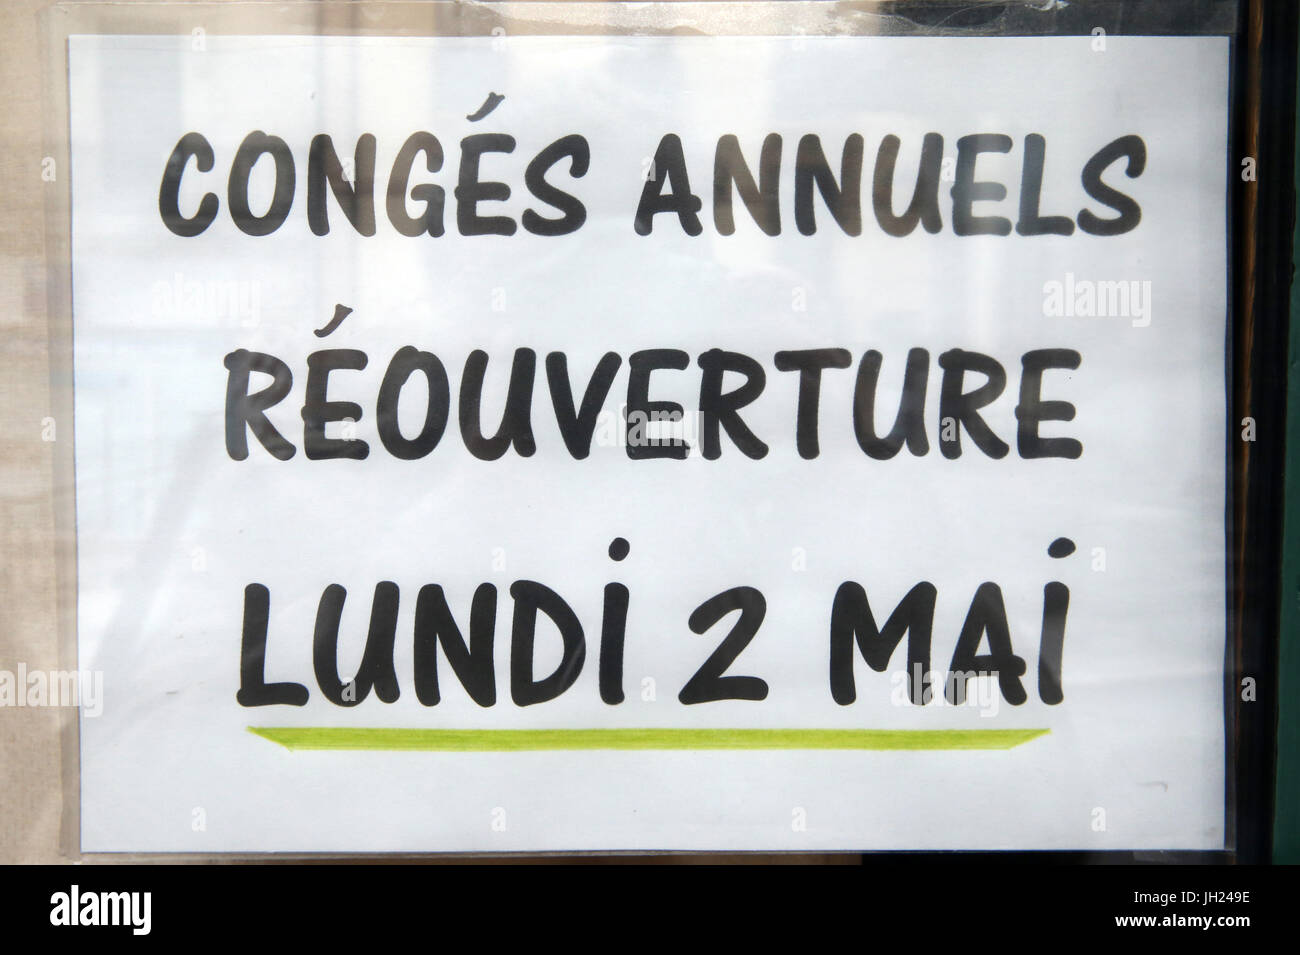 Fermeture pour congŽs annuels. La France. Banque D'Images